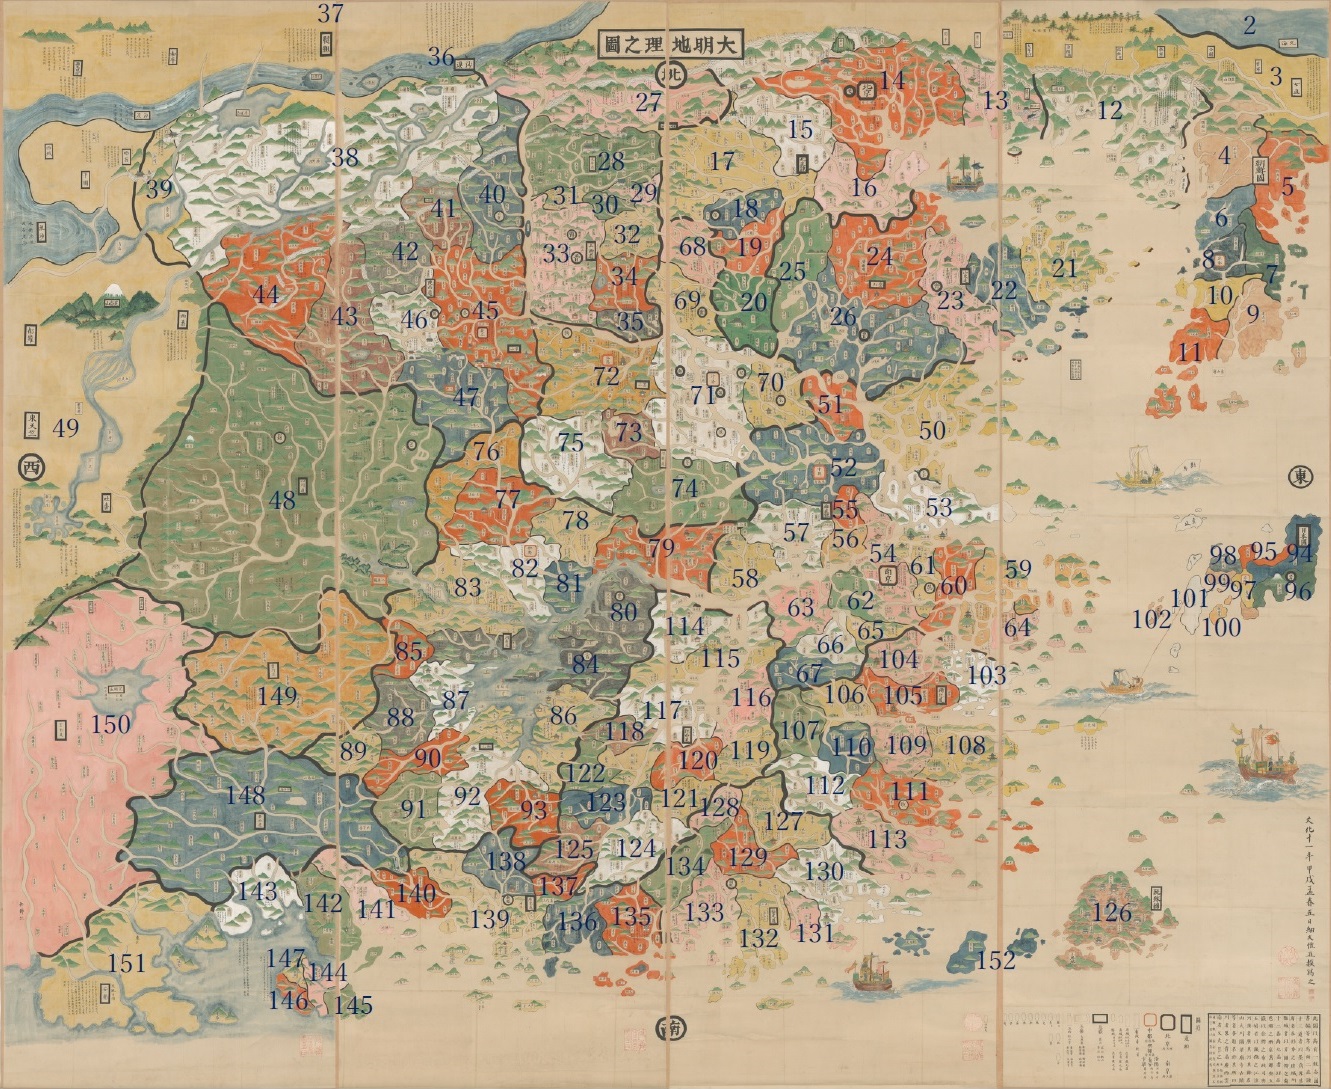 東洋文庫「大明地理之図」データベース